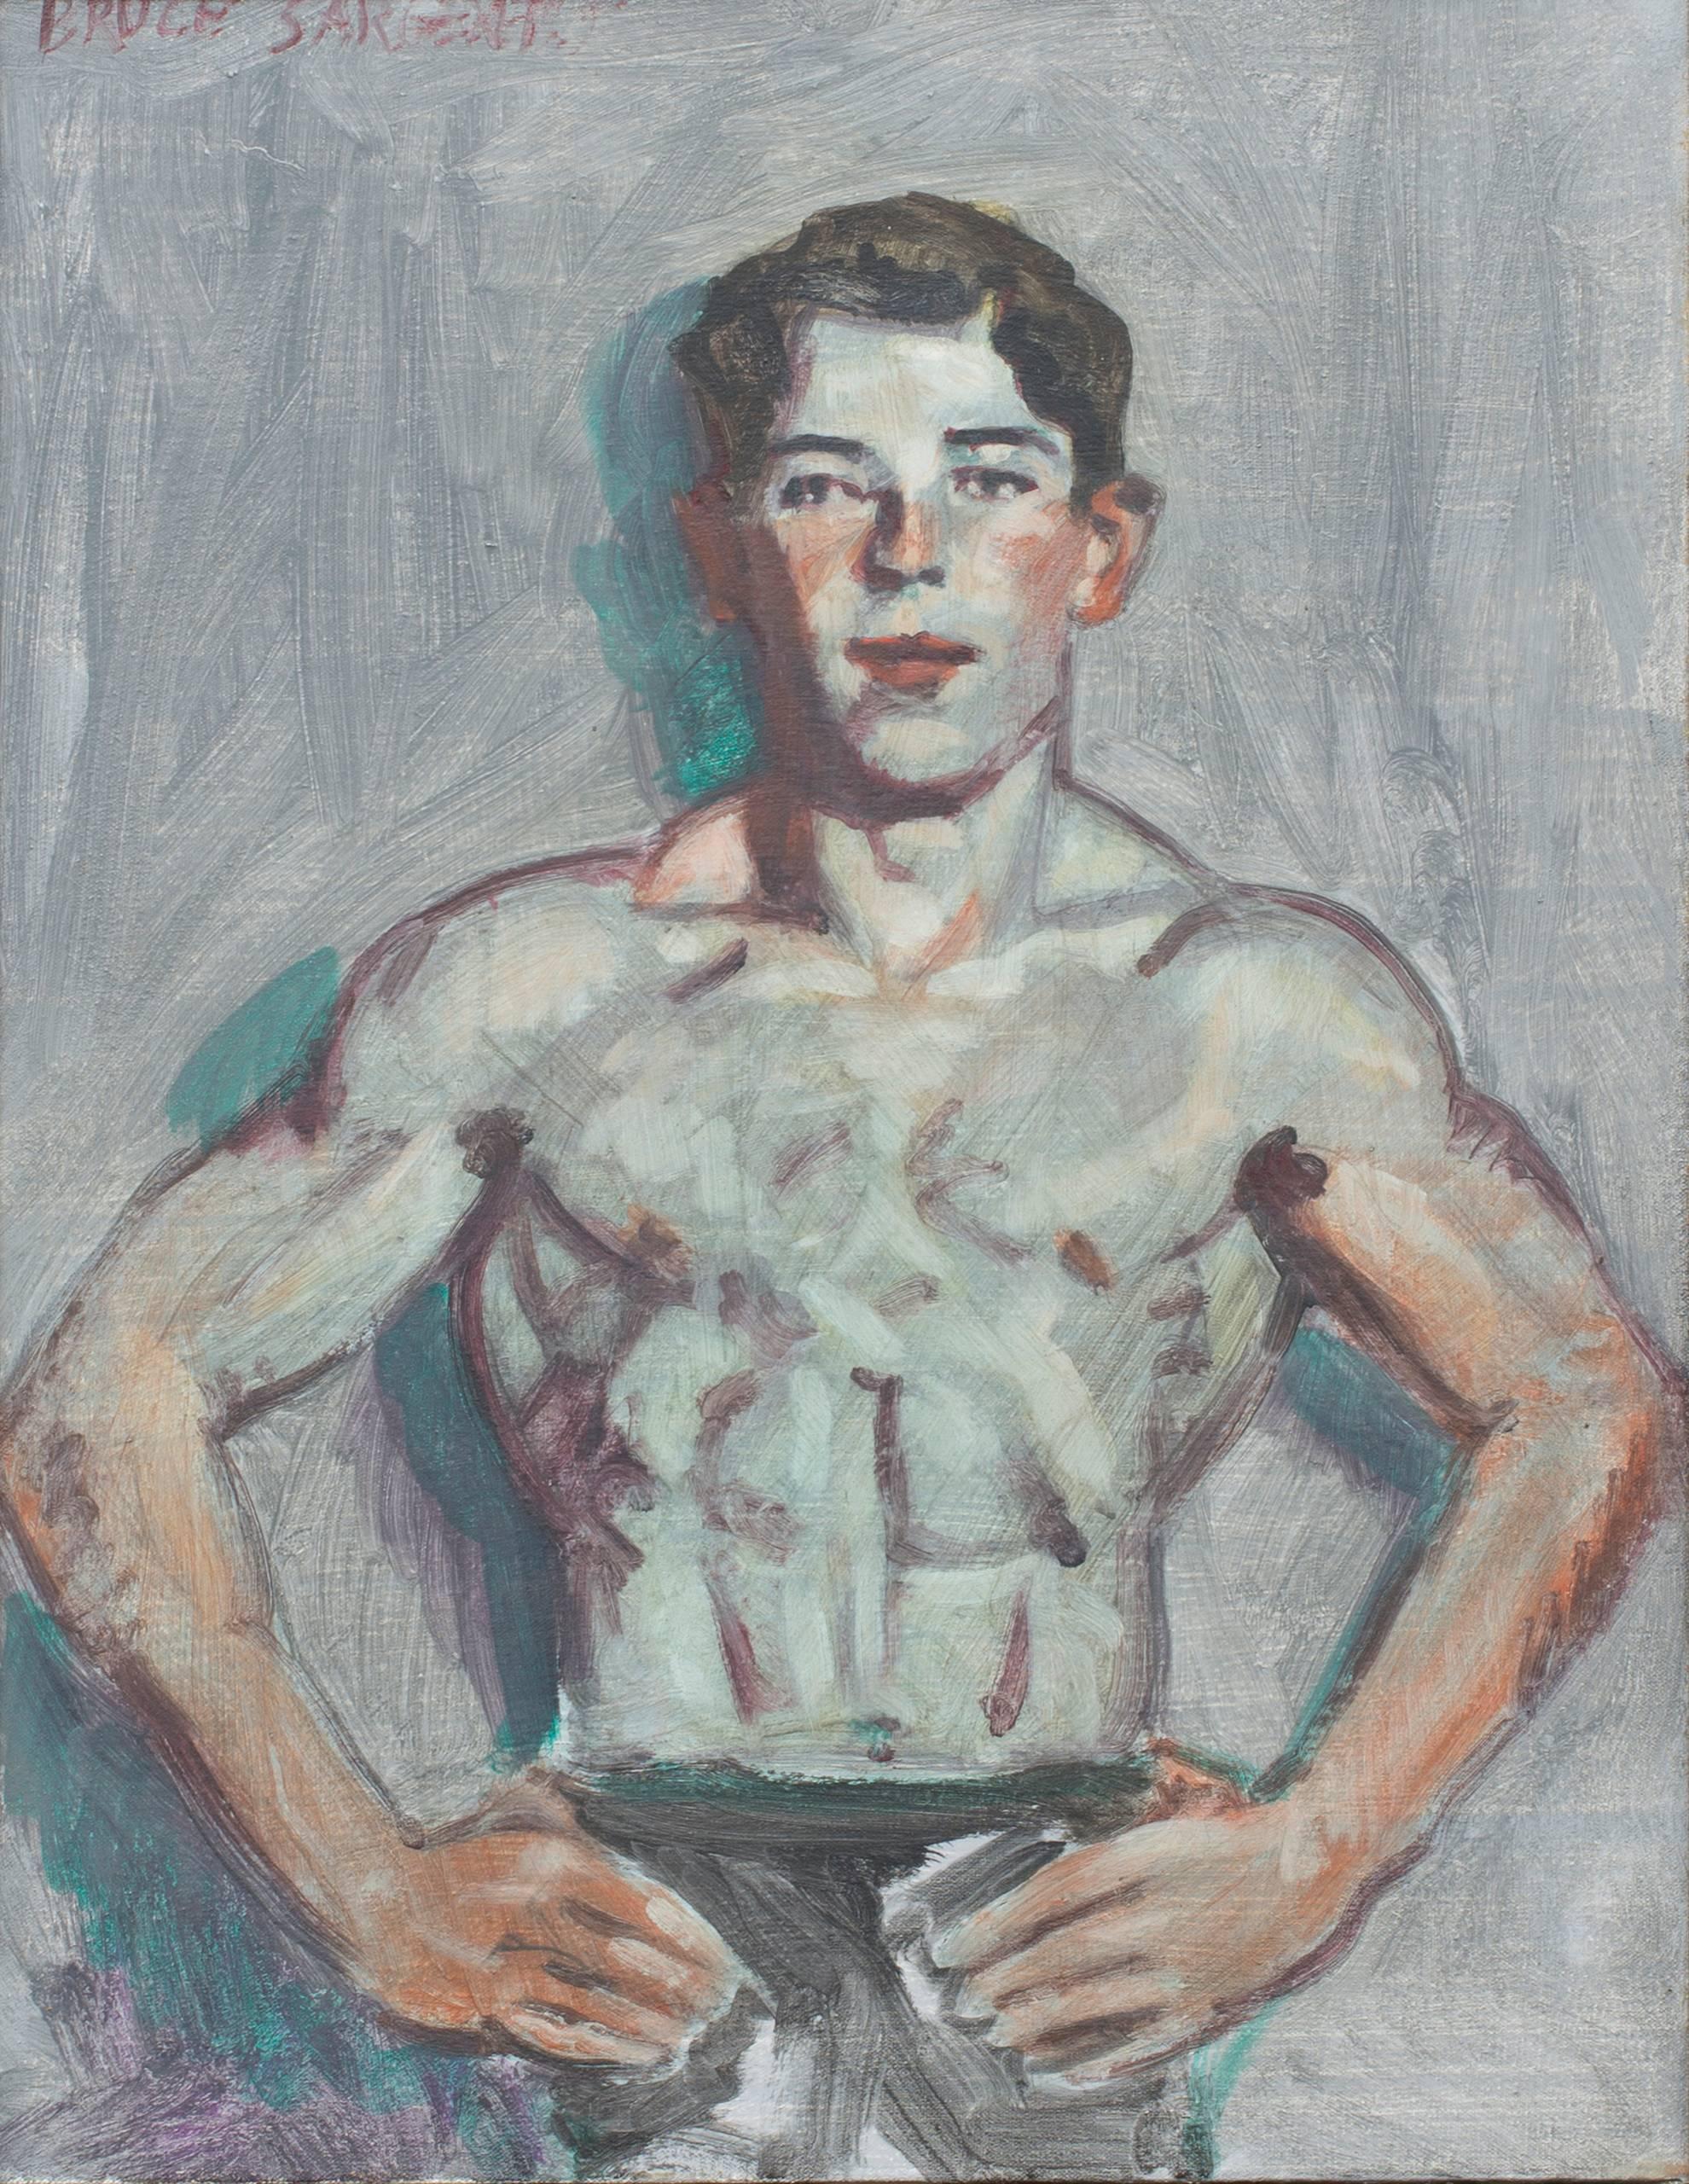 Young Swimmer (Modern, akademisches Porträtgemälde in antikem Goldrahmen) – Painting von Mark Beard